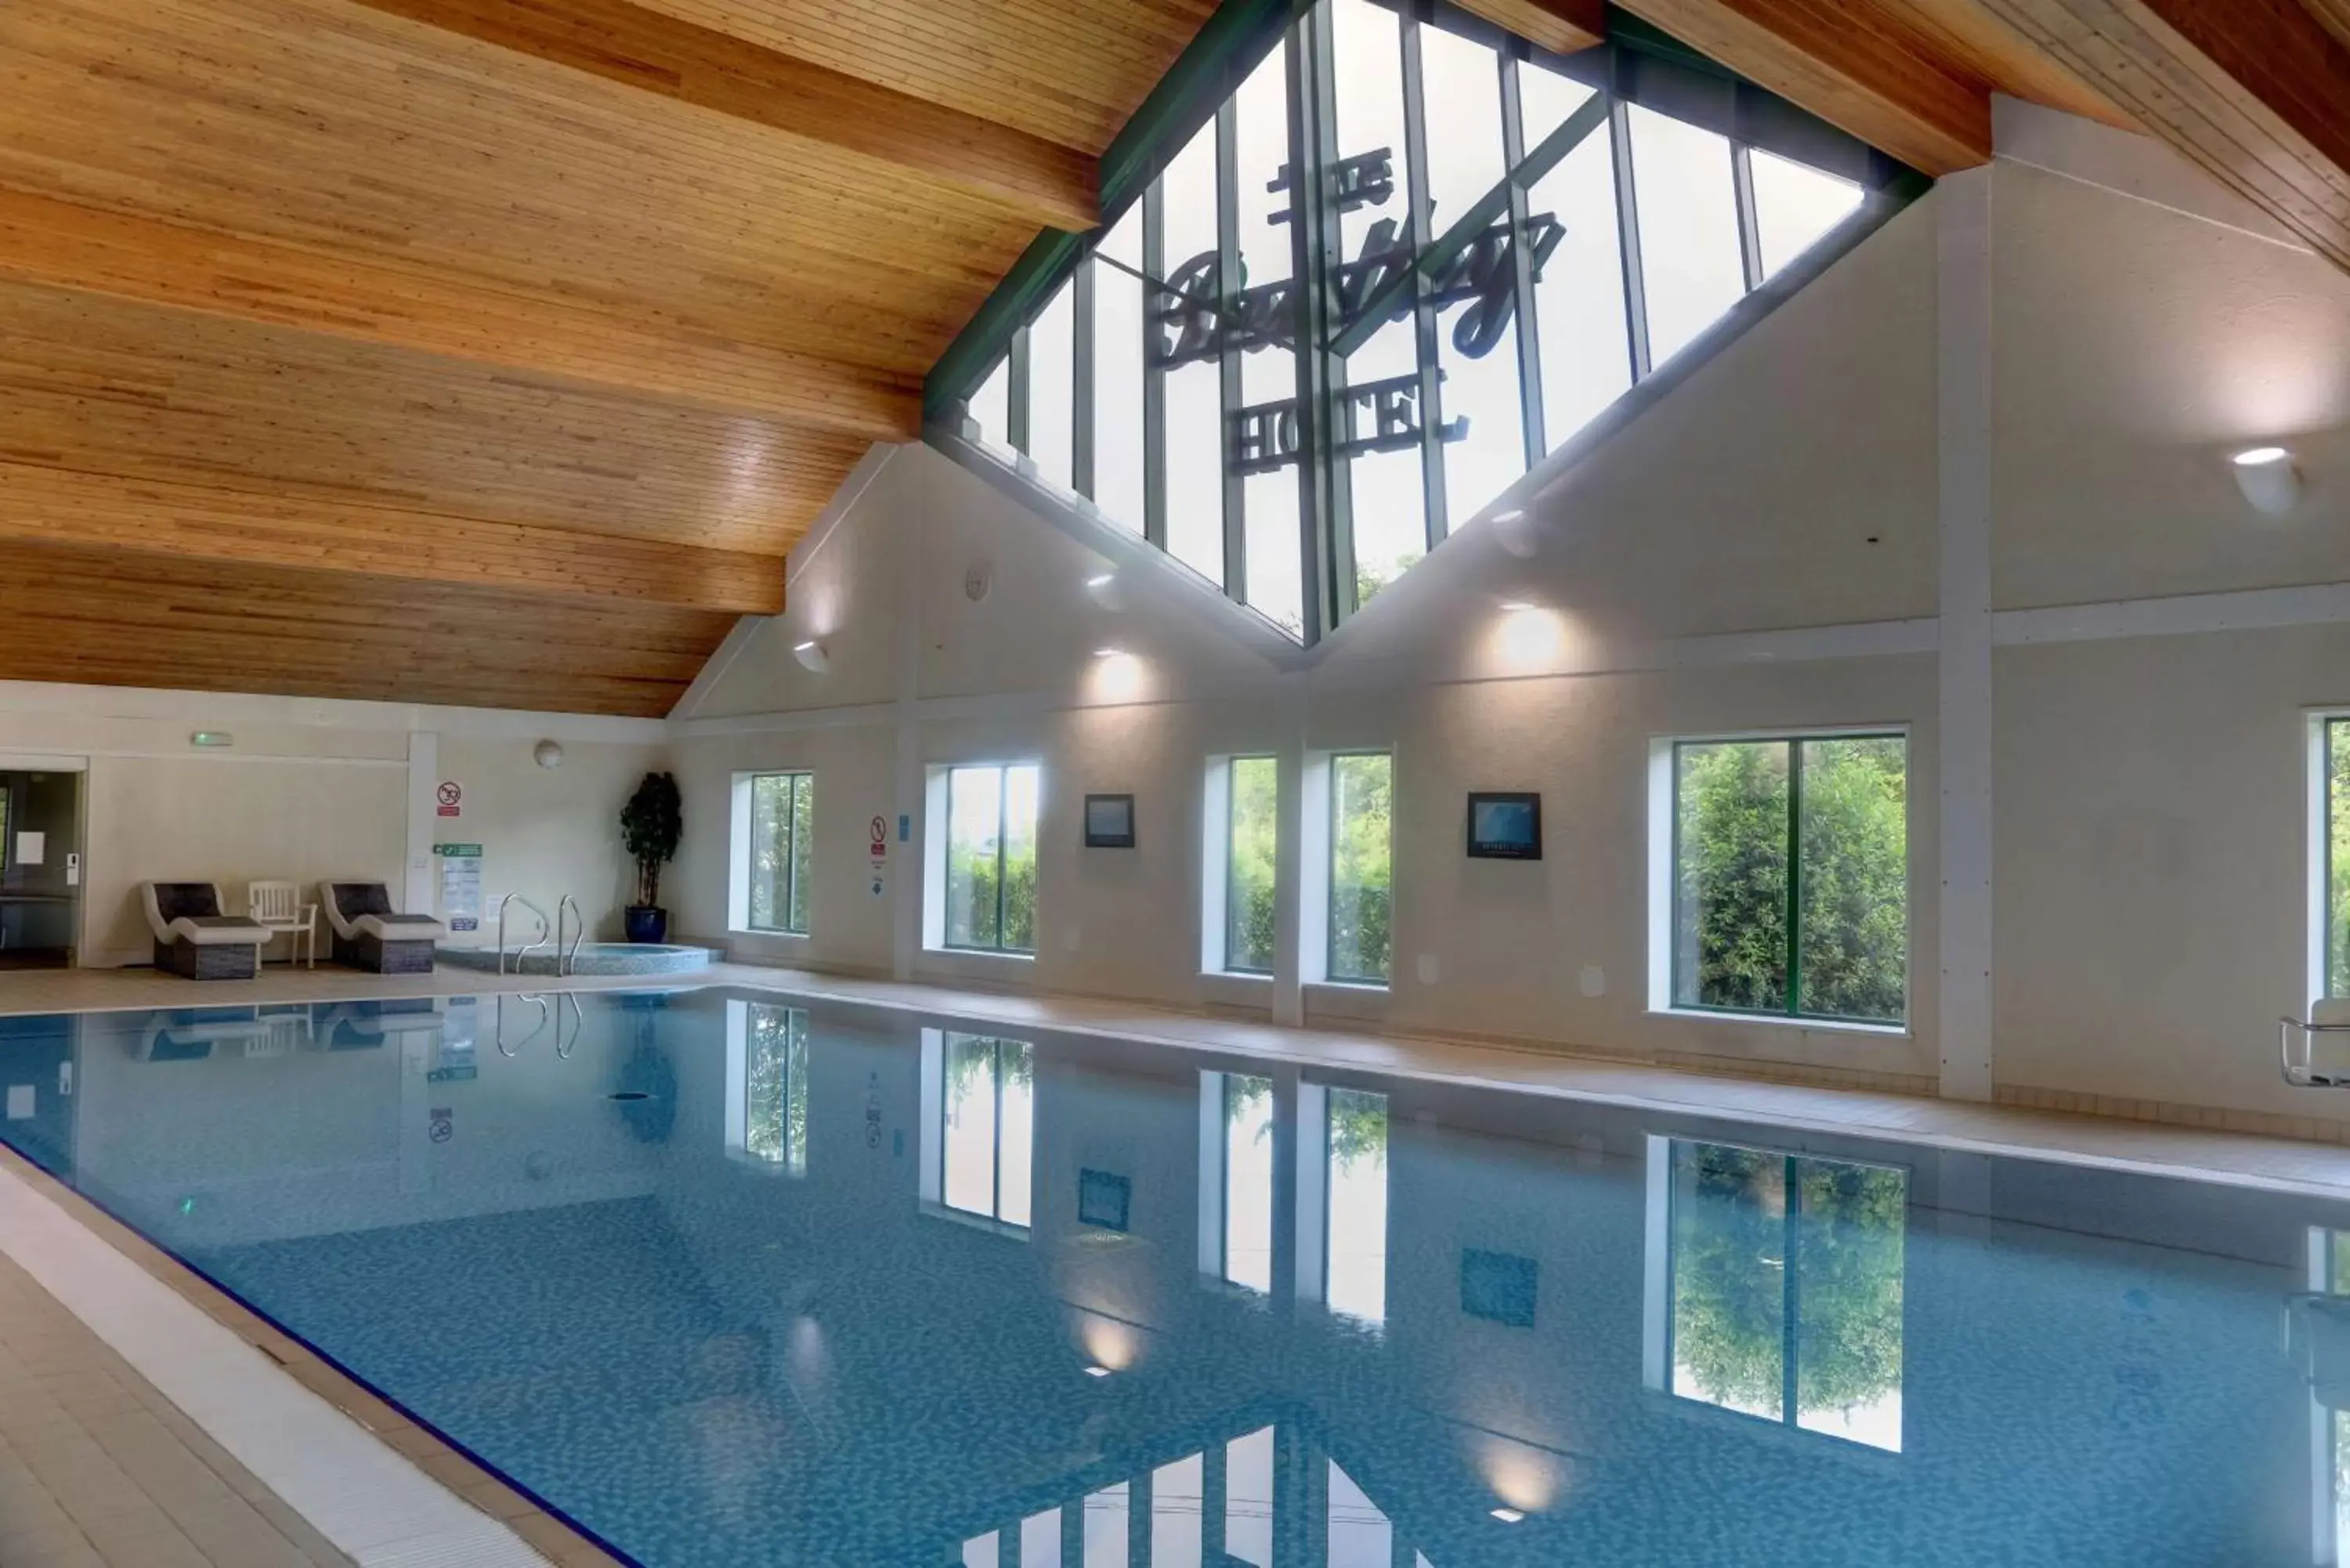 On site, Swimming Pool in Best Western Plus Bentley Hotel, Leisure Club & Spa